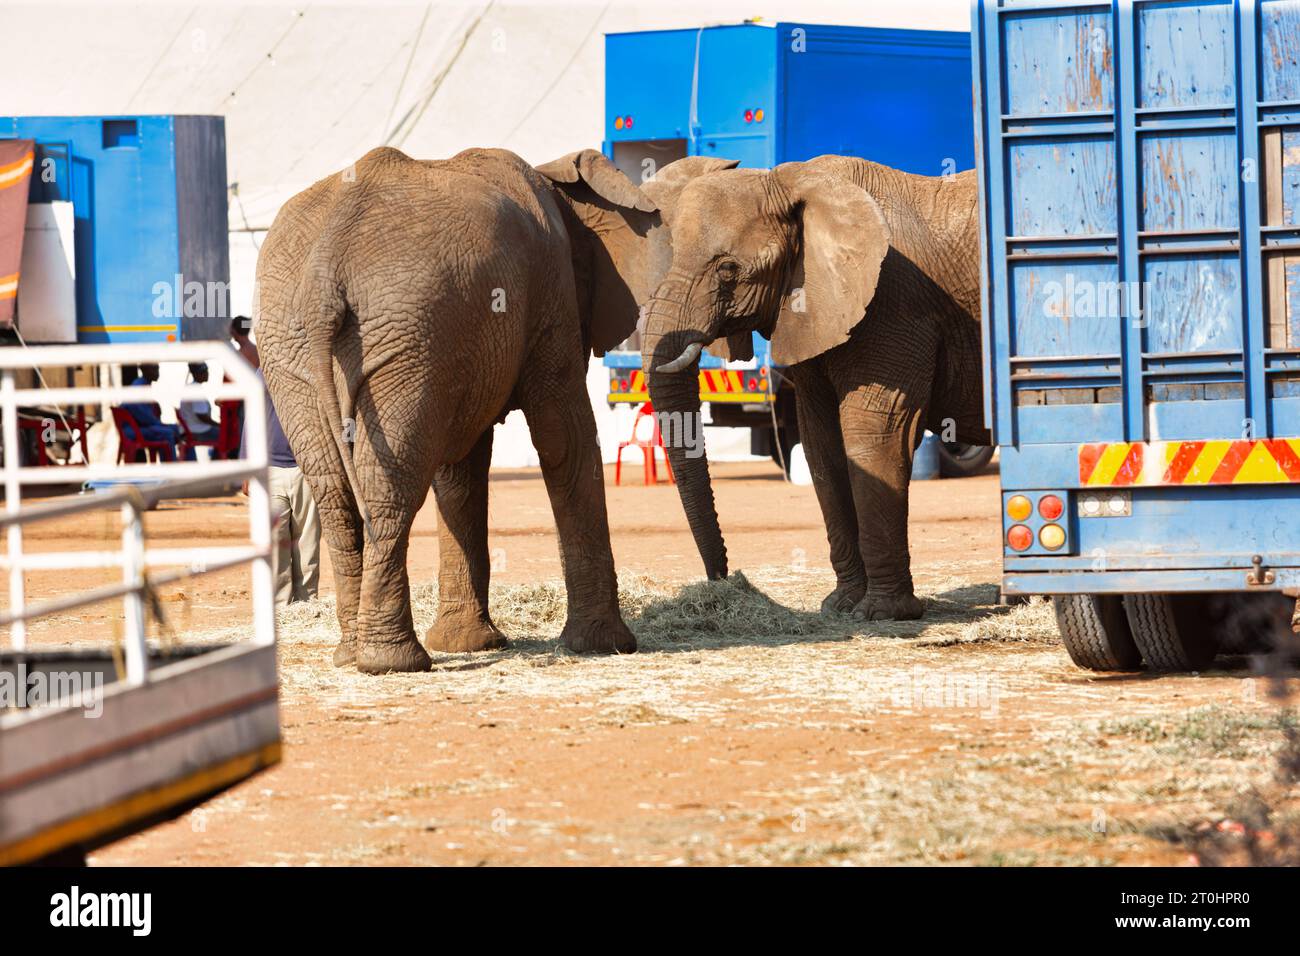 ong à la rescousse des éléphants de cirque debout et se nourrissant dans la cour à l'extérieur à côté des camions pour le transport Banque D'Images